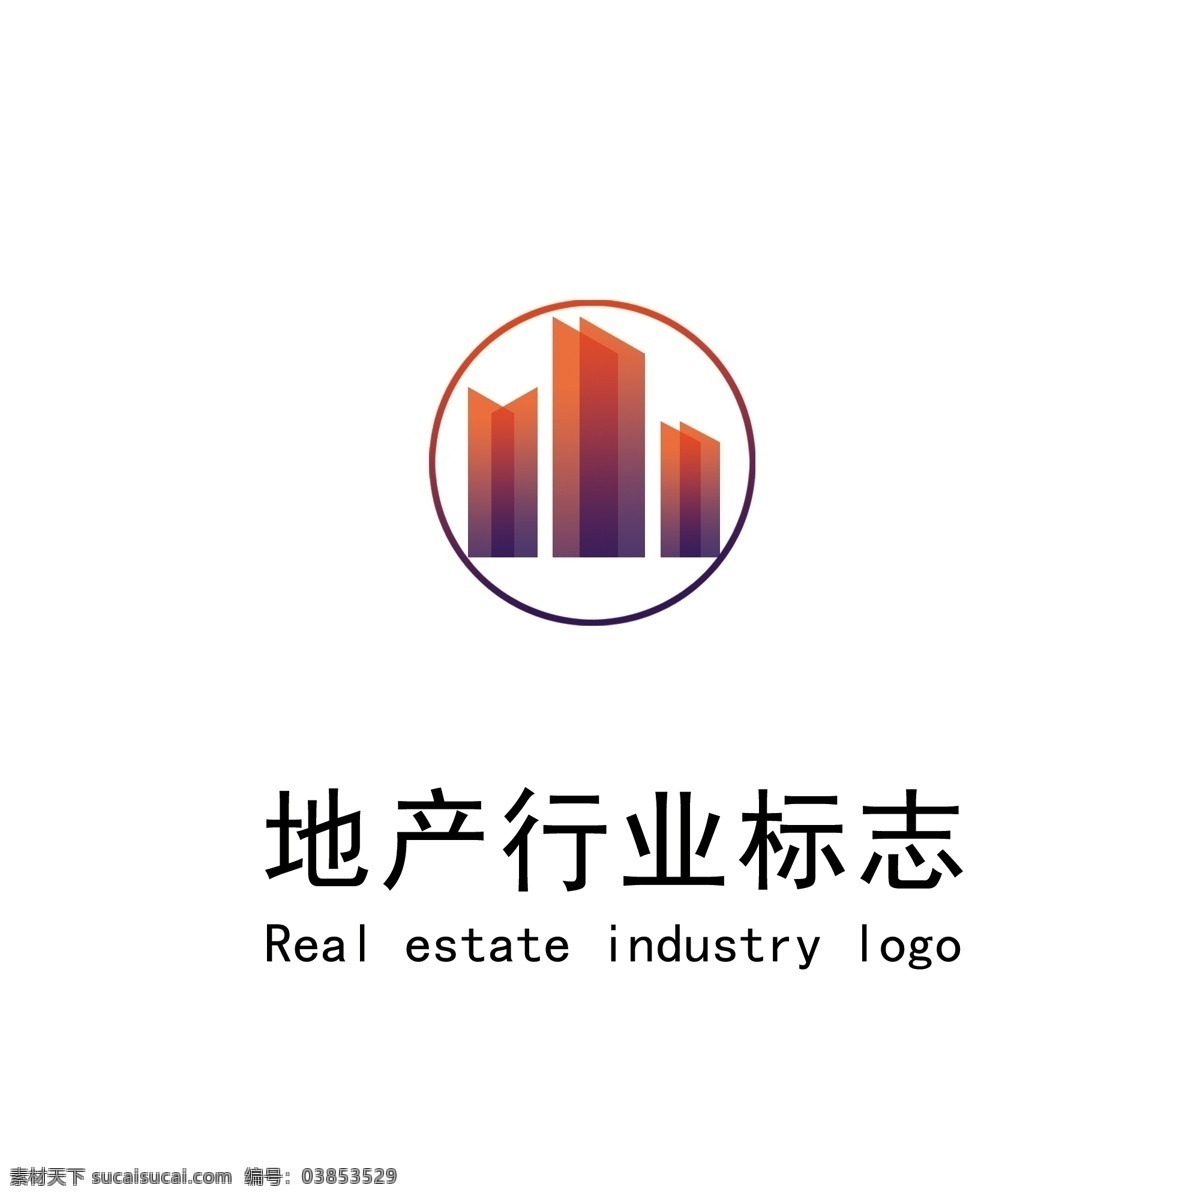 简约 多彩 地产 logo 地产logo 地产标志 标志 房地产 房地产标志 城市logo 城市标志 物业logo 物业标志